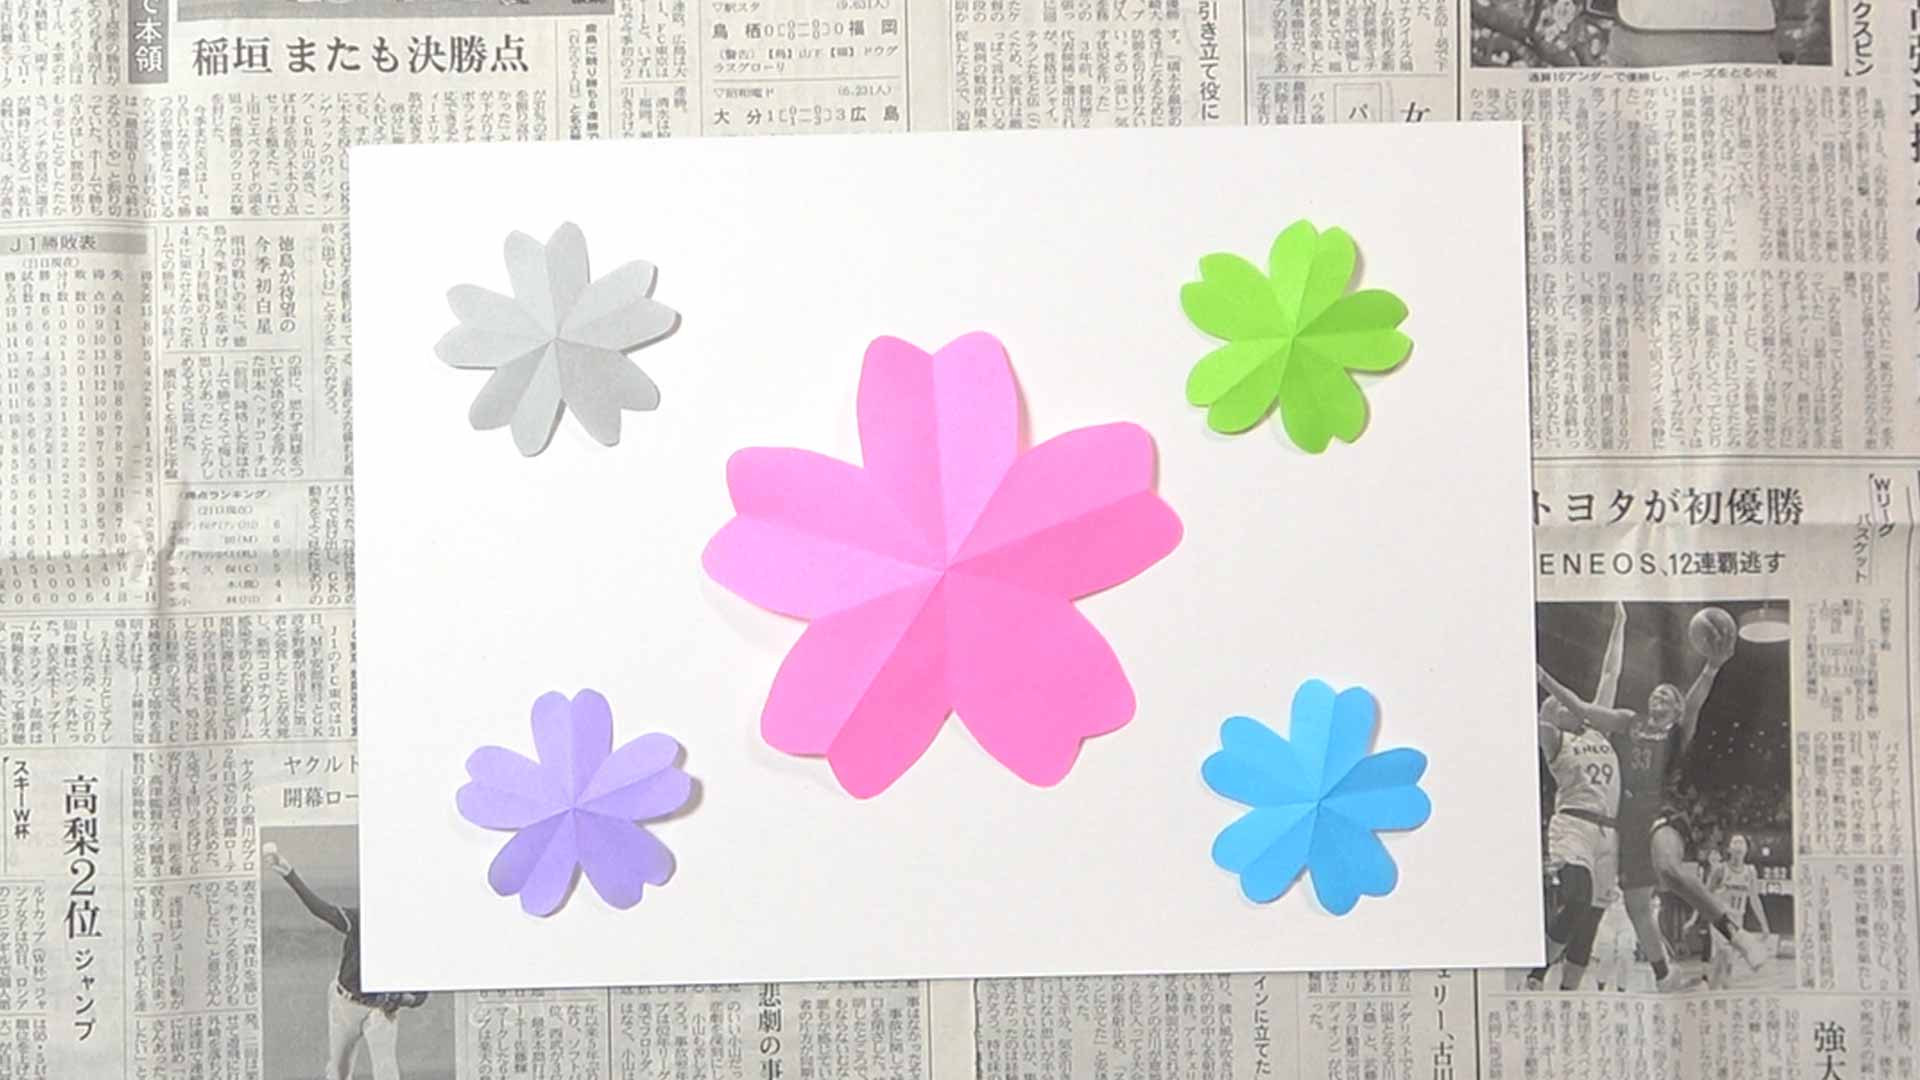 吉本芸人span マコトの一緒に製作 桜の壁紙 の作り方 動画 ほいくnote